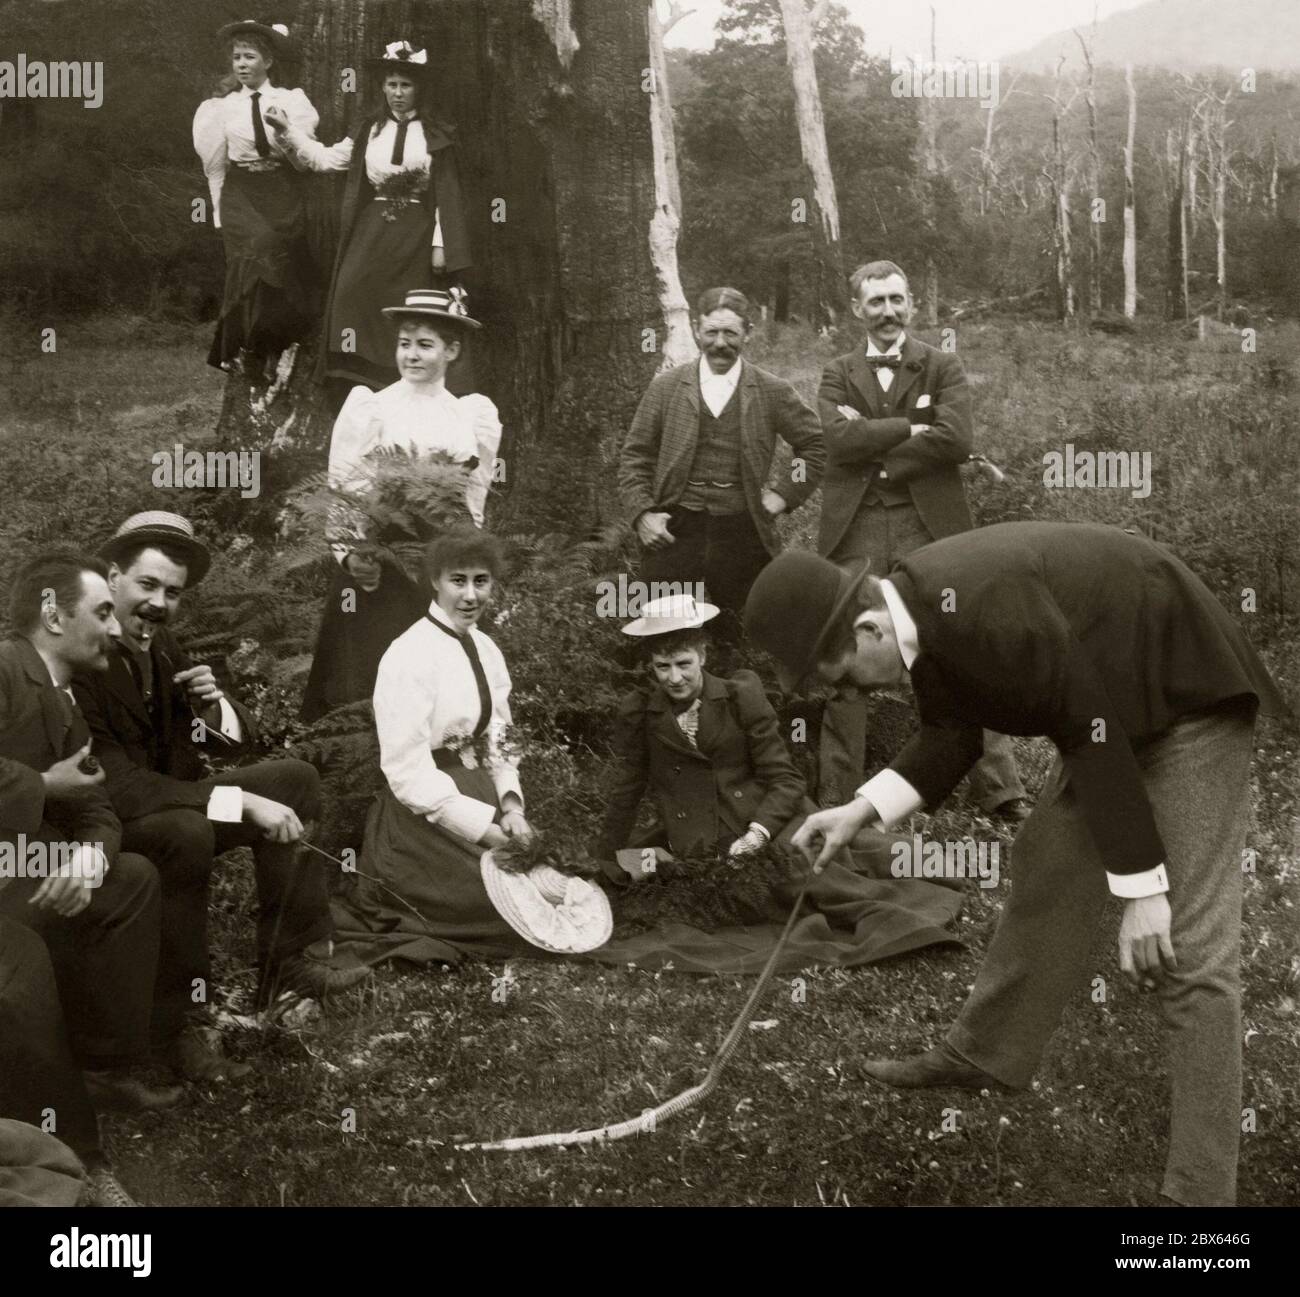 Eine Gruppe aus BushWalking posiert für die Kamera in Victoria, Australien c.. 1900. Nachdem er auf eine tote Schlange gestoßen ist, nimmt ein Mann sie vorsichtig am Schwanz auf. Die Frauen und Männer sind modisch in ganz formelle Kleidung für einen solchen Ausflug gekleidet. Sie sind von Eukalyptus und Farnen umgeben. Stockfoto